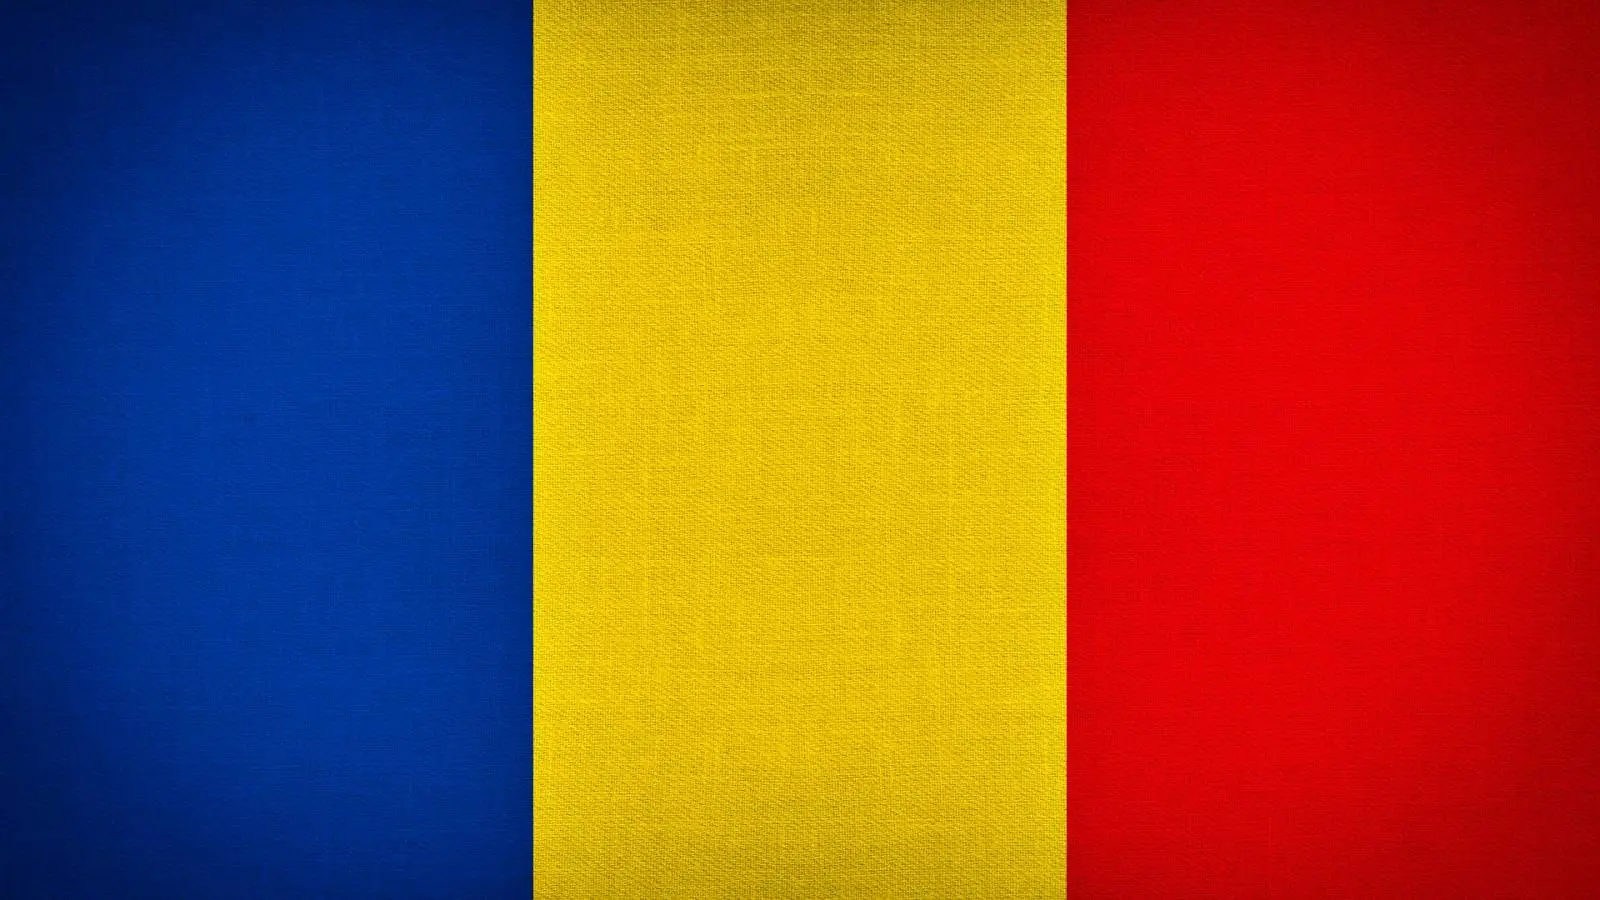 Romanian viime hetken ilmoitus -ongelma, joka huolestuttaa miljoonia ihmisiä